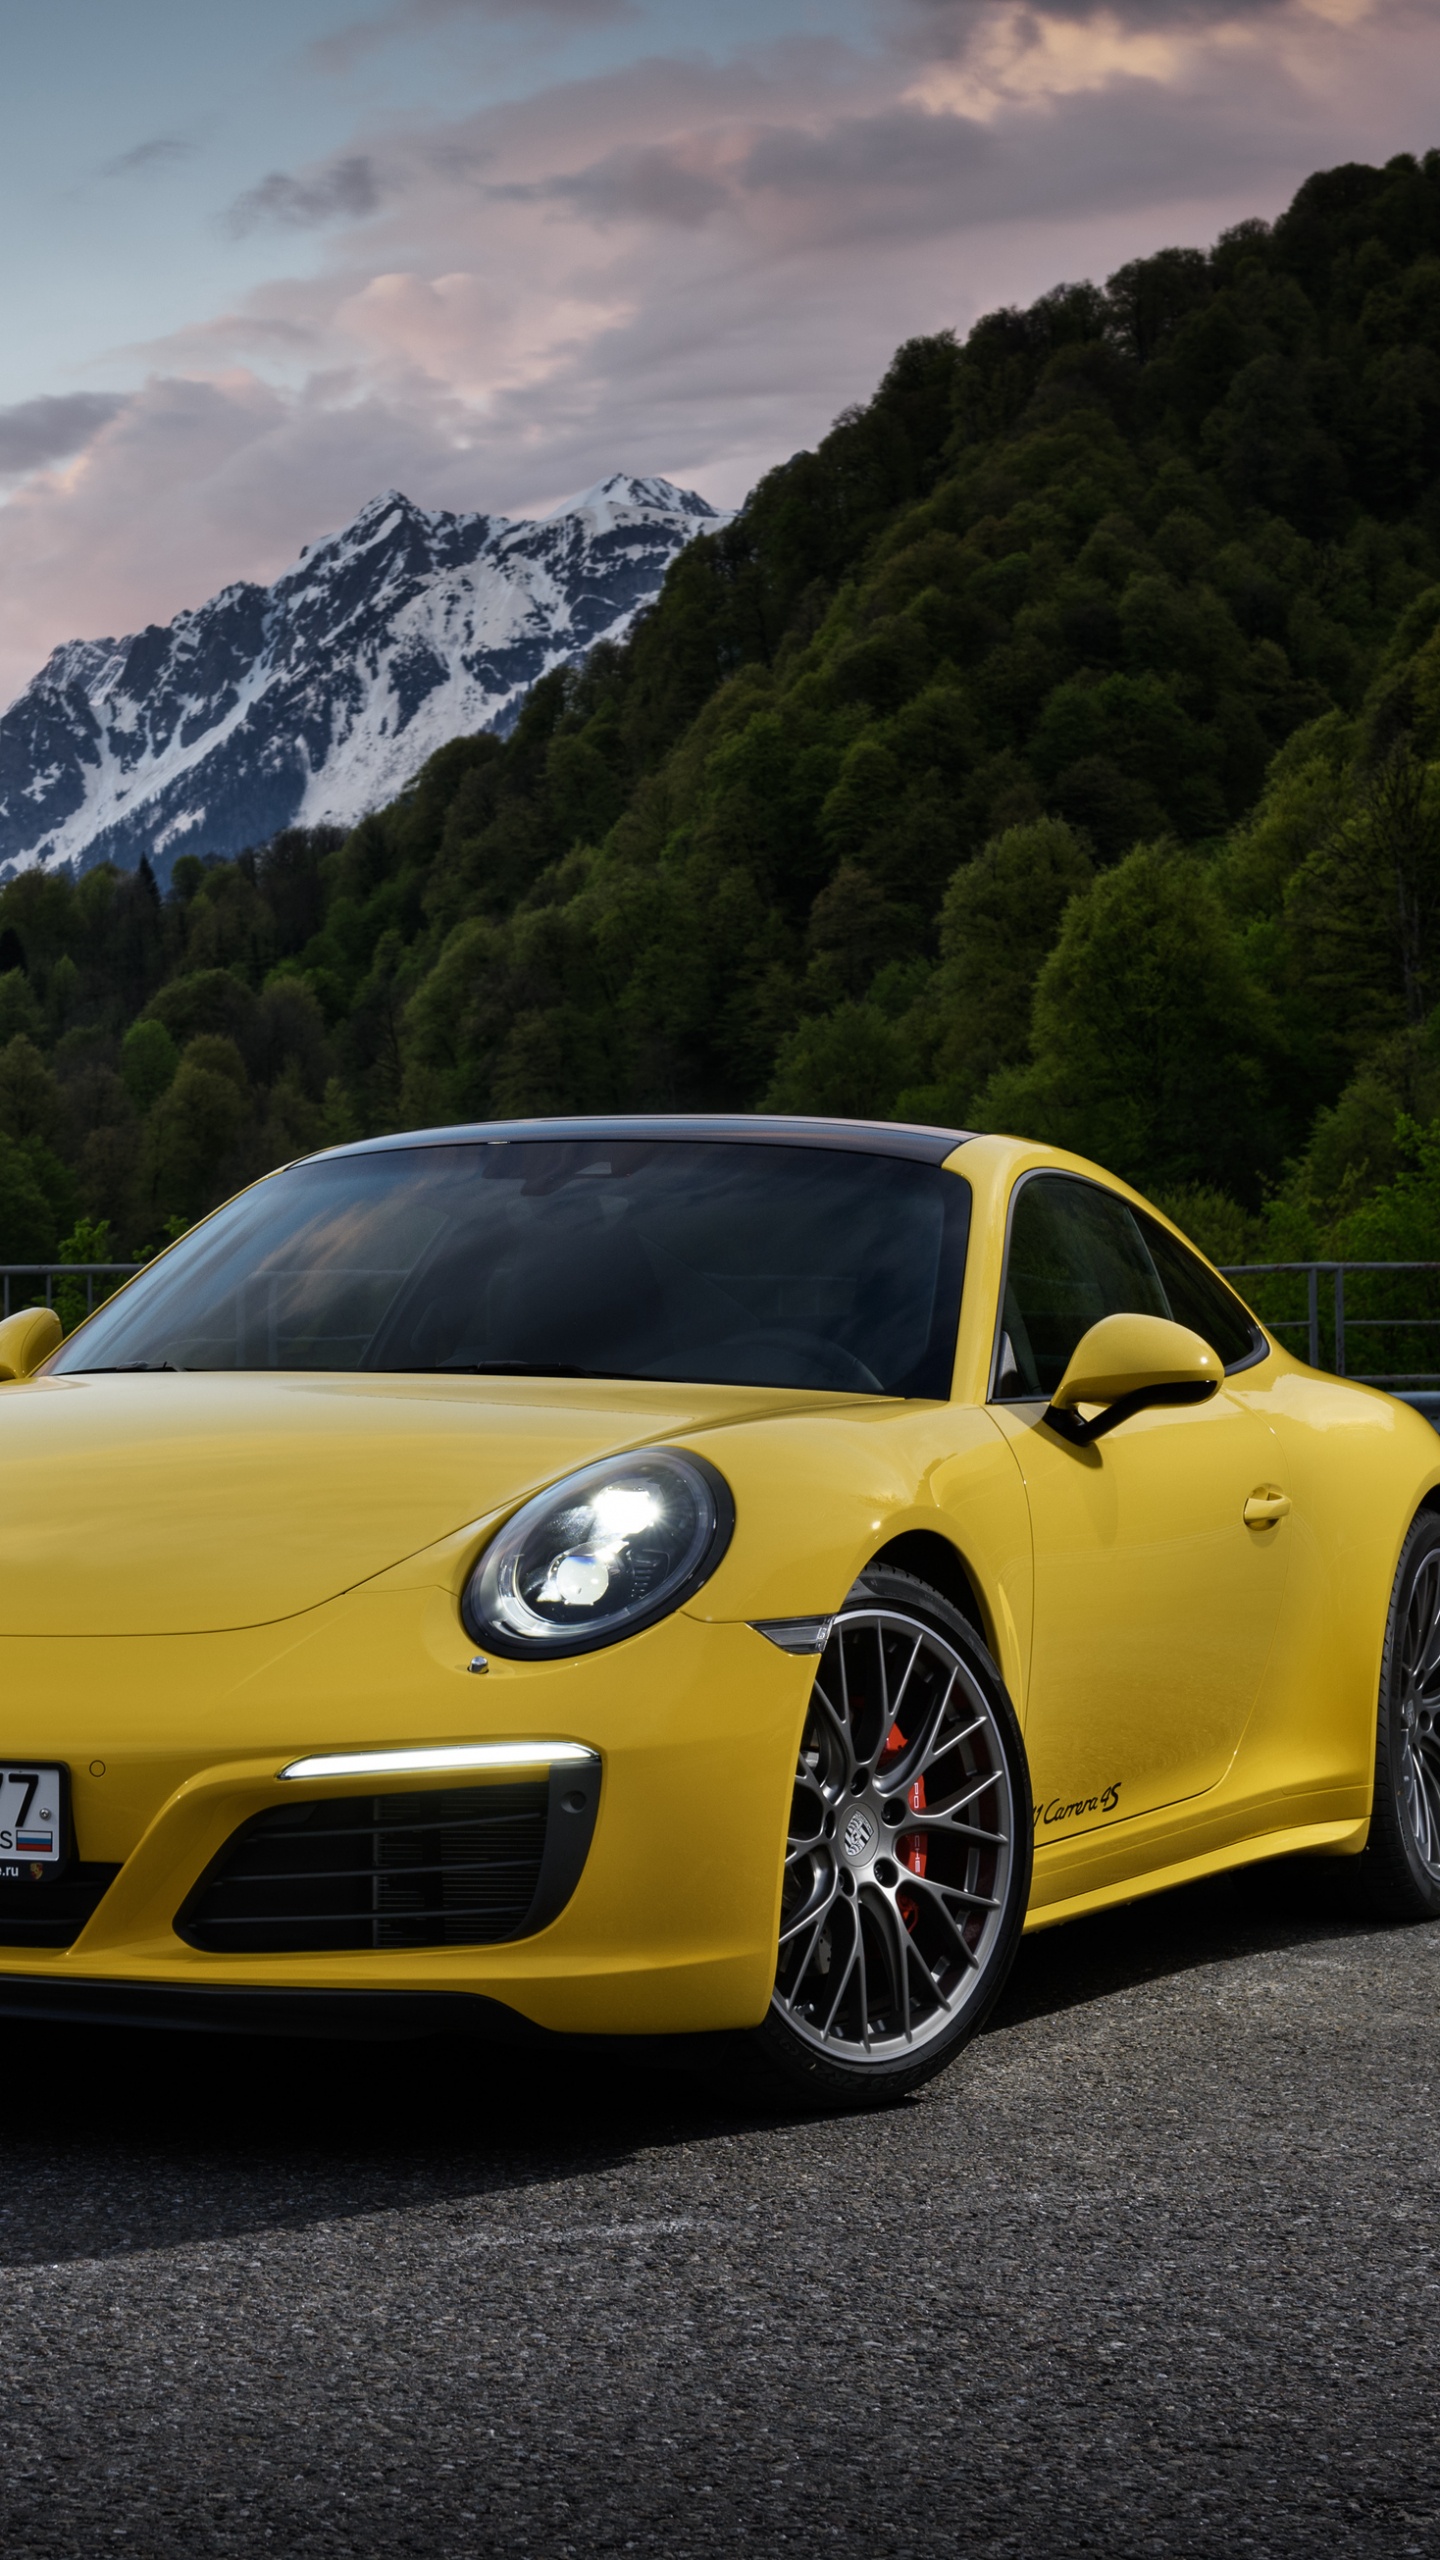 Porsche 911 Jaune Sur Route Près de la Montagne Pendant la Journée. Wallpaper in 1440x2560 Resolution